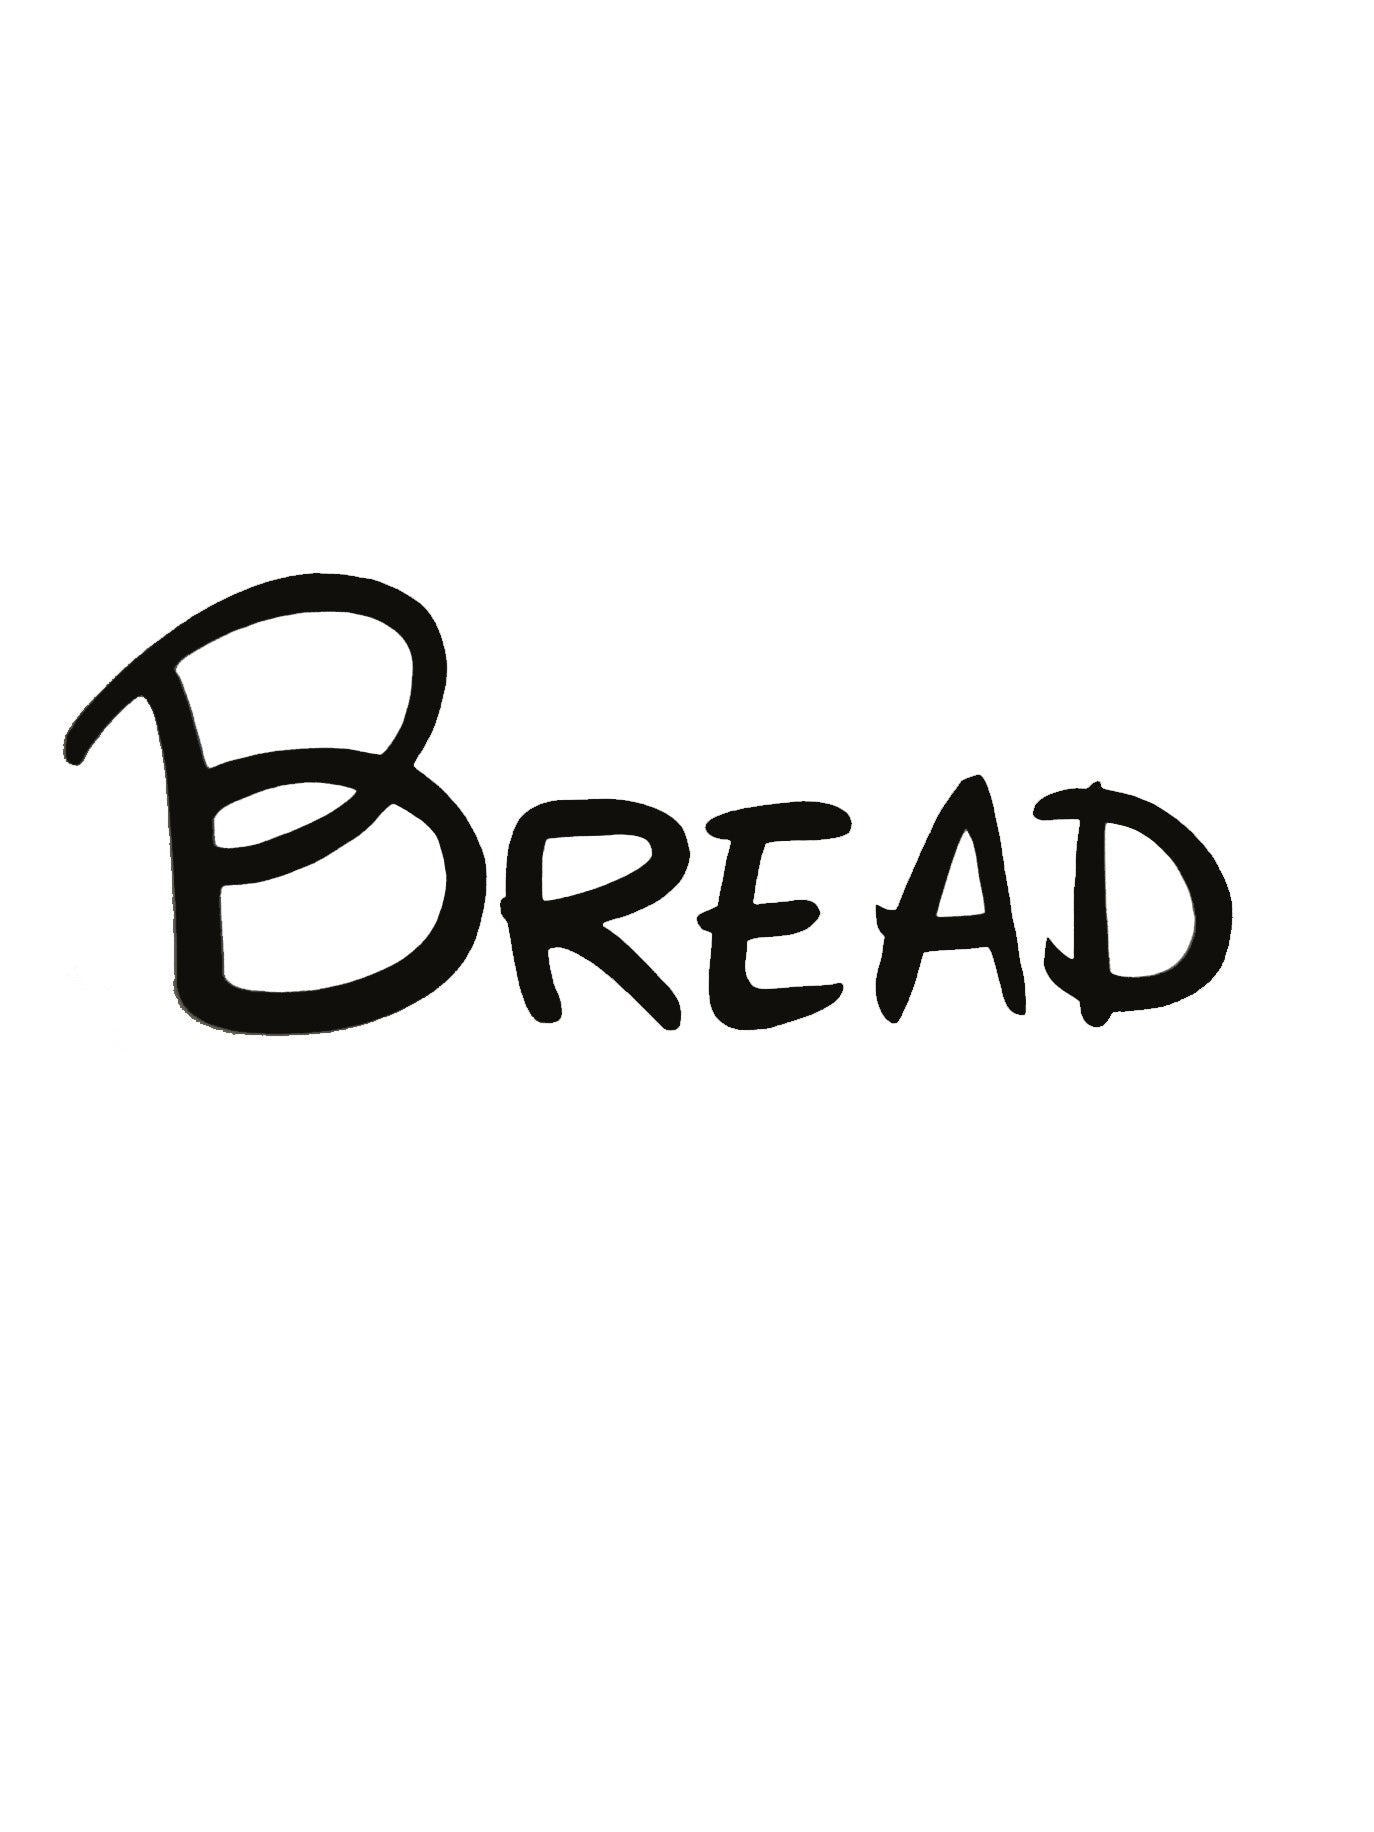 Bread Kitchen Decal - A Vinyl Sticker Decal